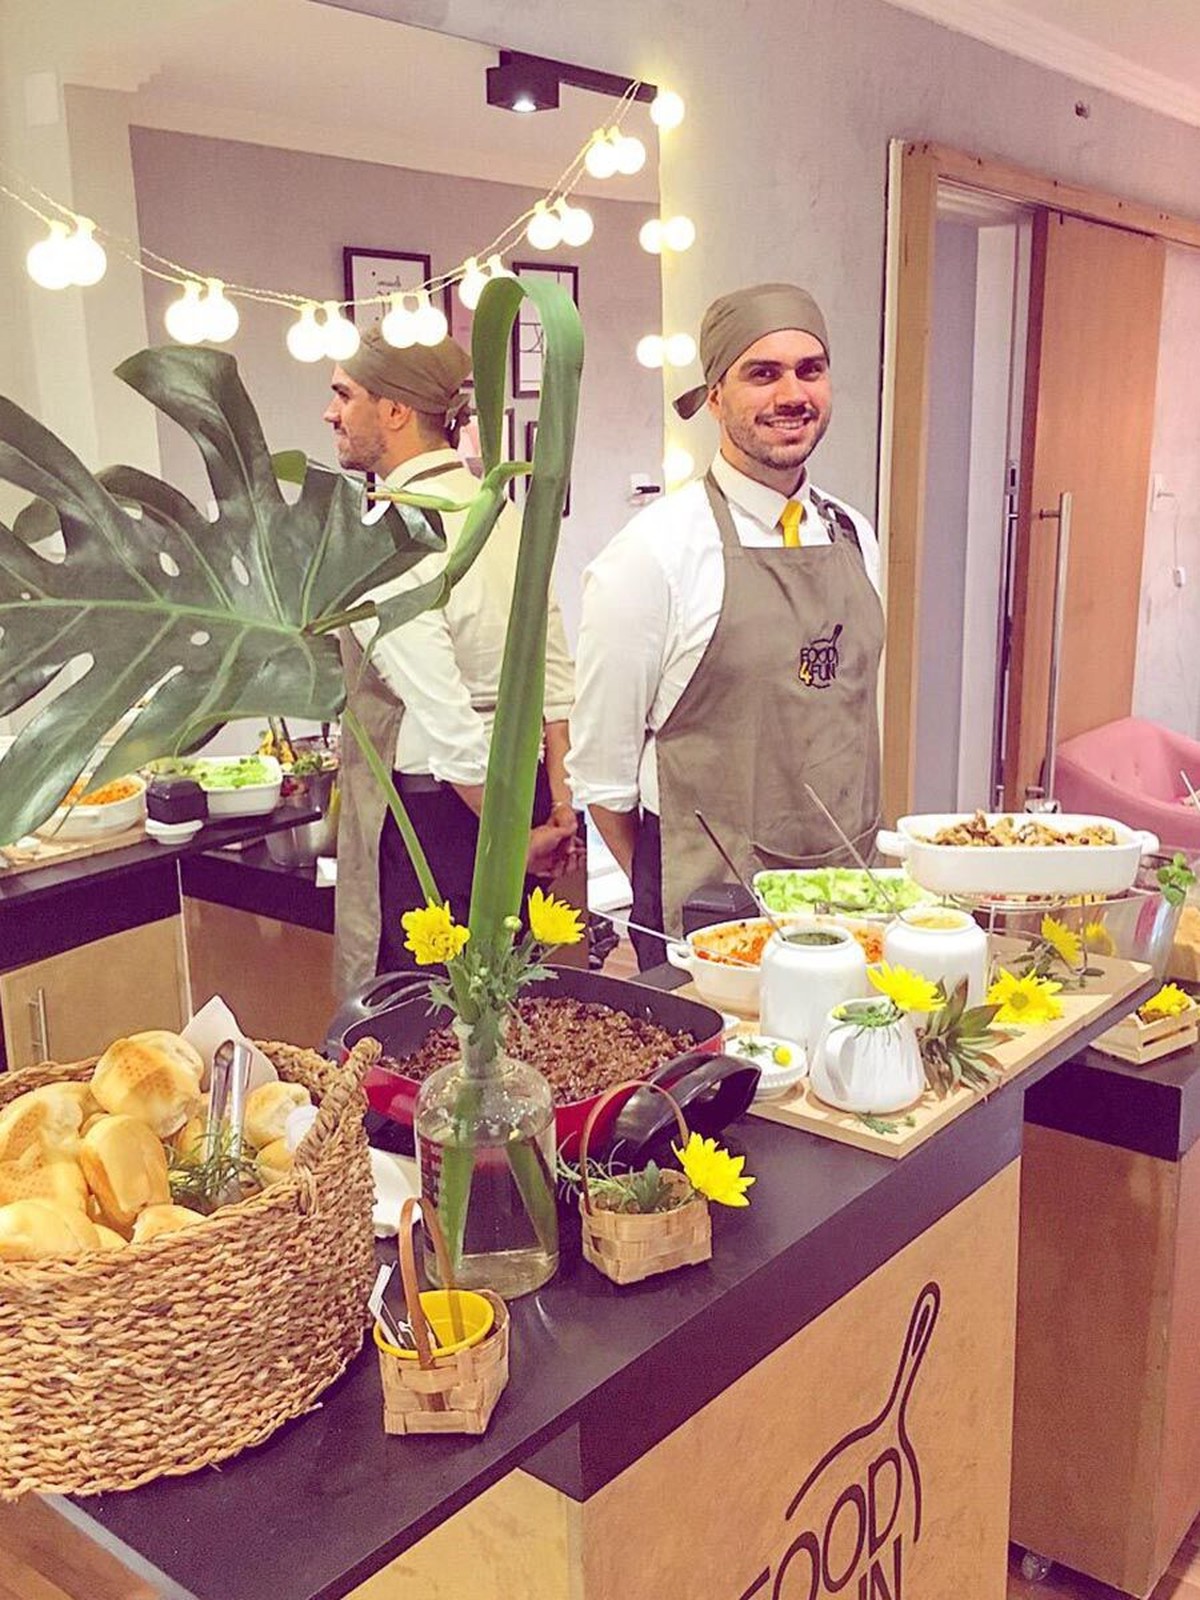 Carrinhos Gourmet ganham espaço em festas por praticidade e comidas  saborosas | Especial Publicitário Na Mosca Eventos | G1